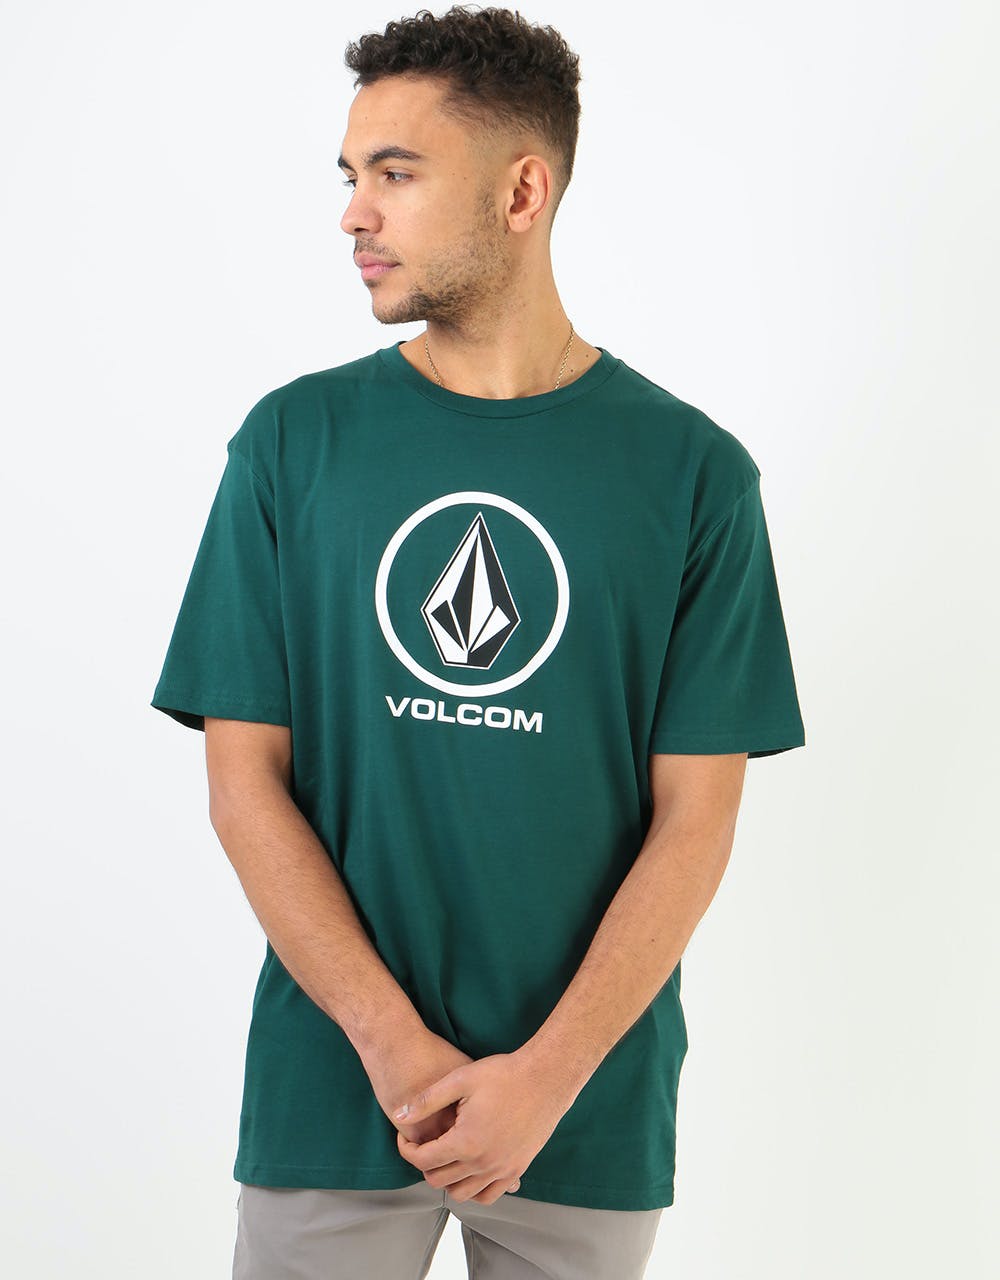 Volcom Crisp Stone Basic T-Shirt - Evergreen